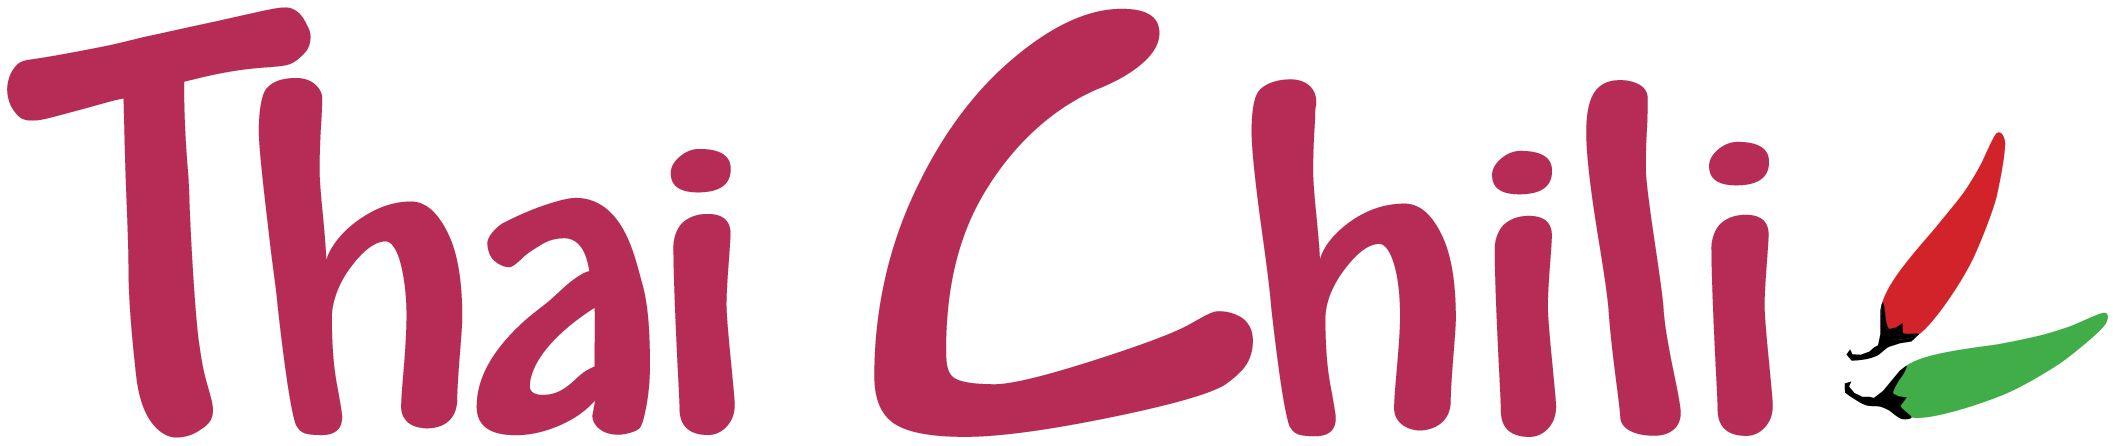 Chillis Rest Logo - Thai Chili